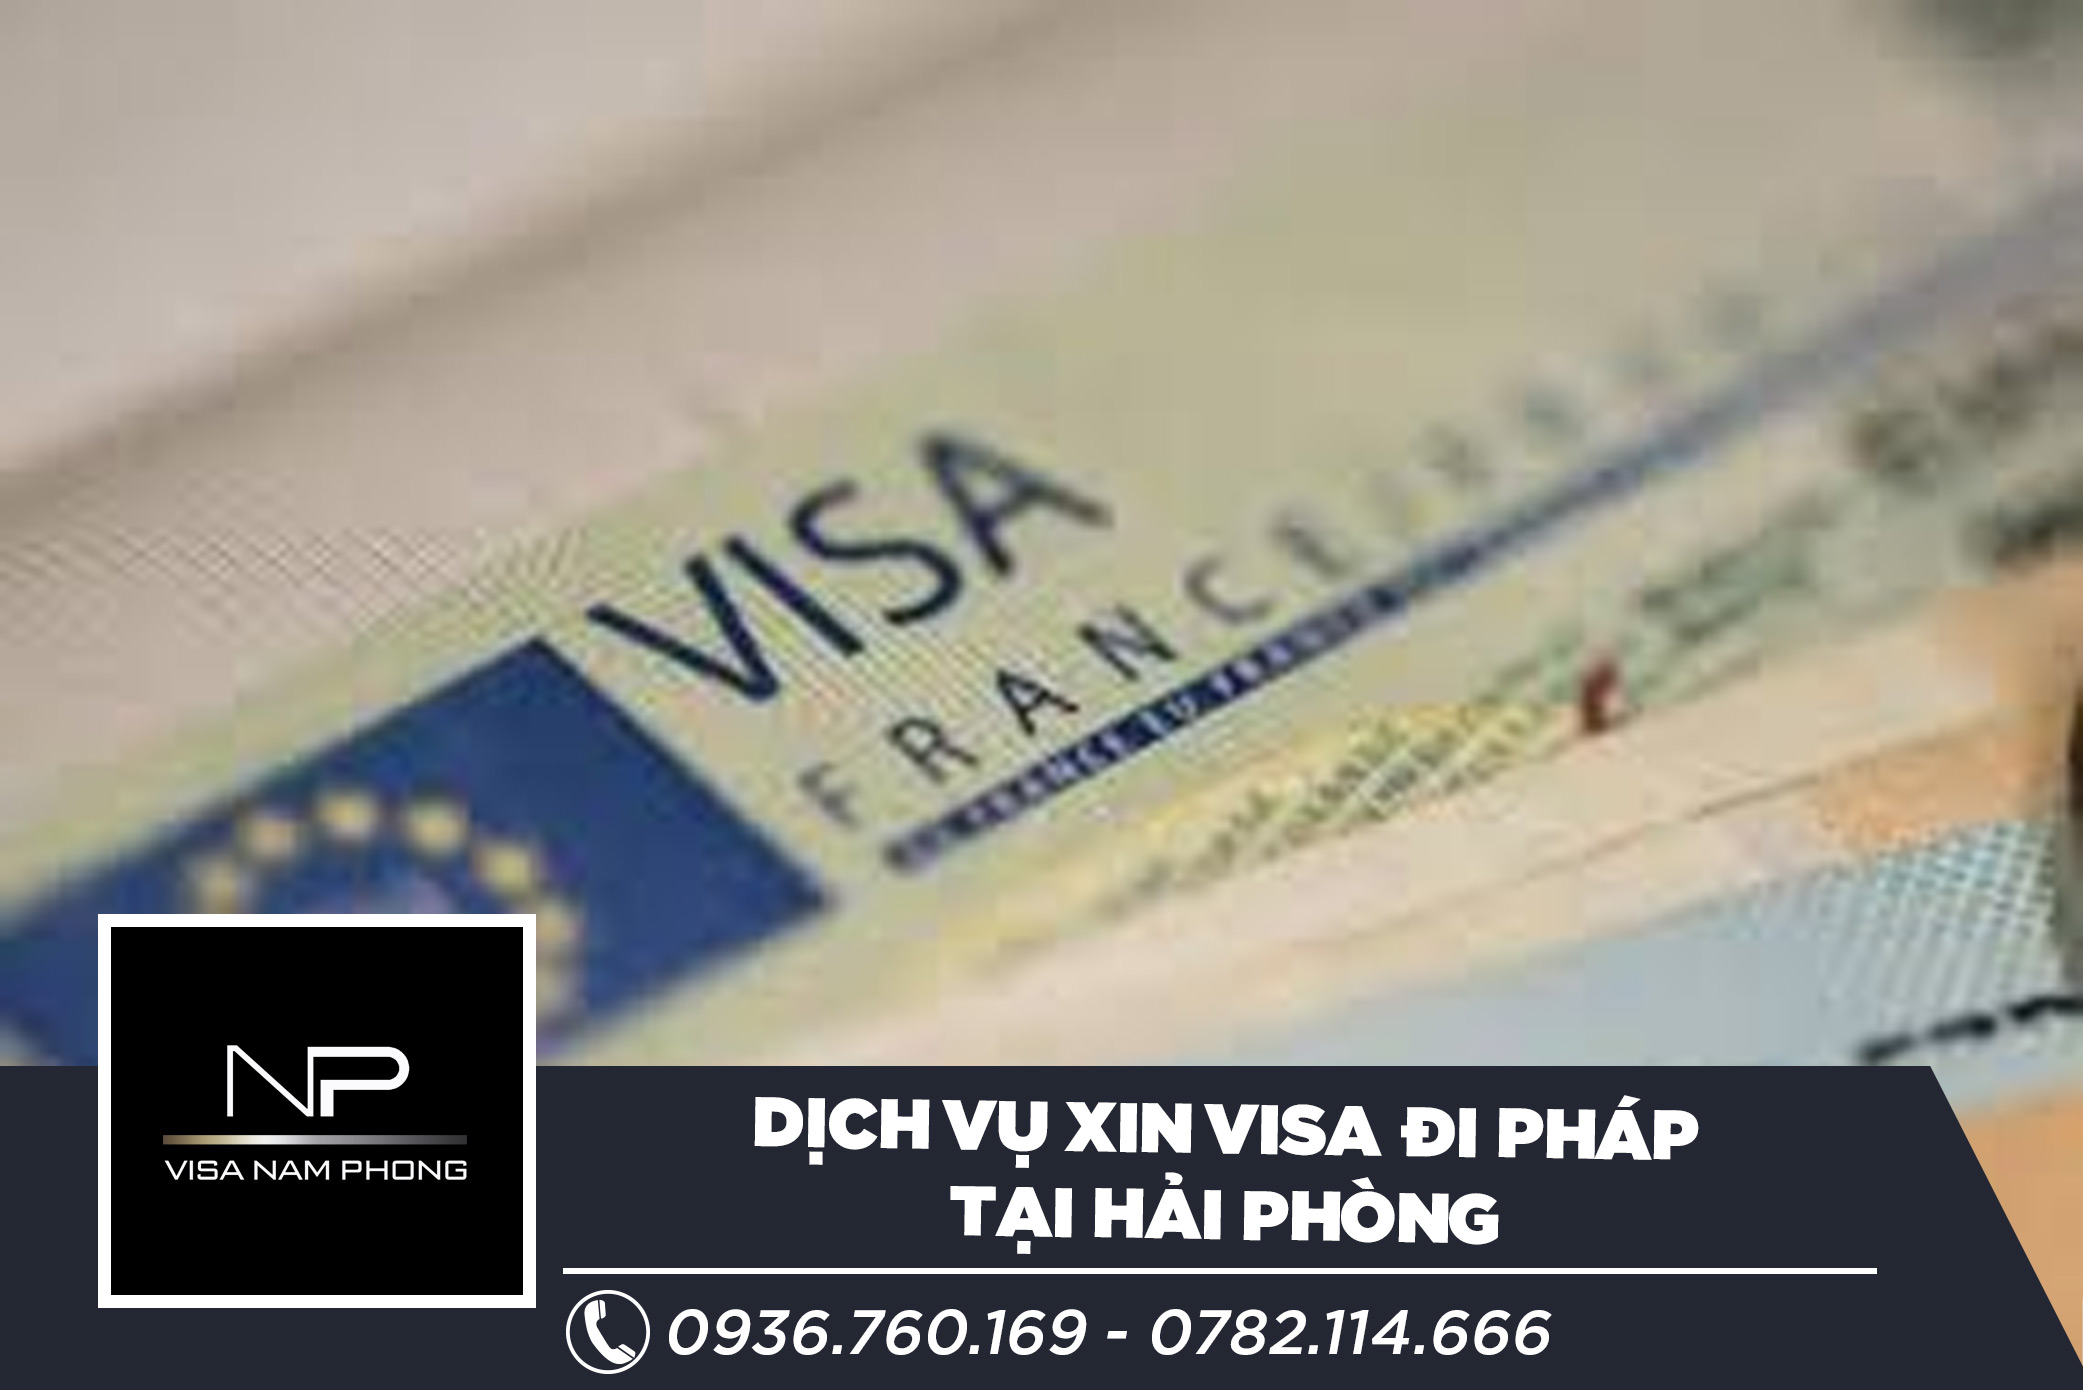 Dịch vụ xin visa đi Pháp tại Hải Phòng